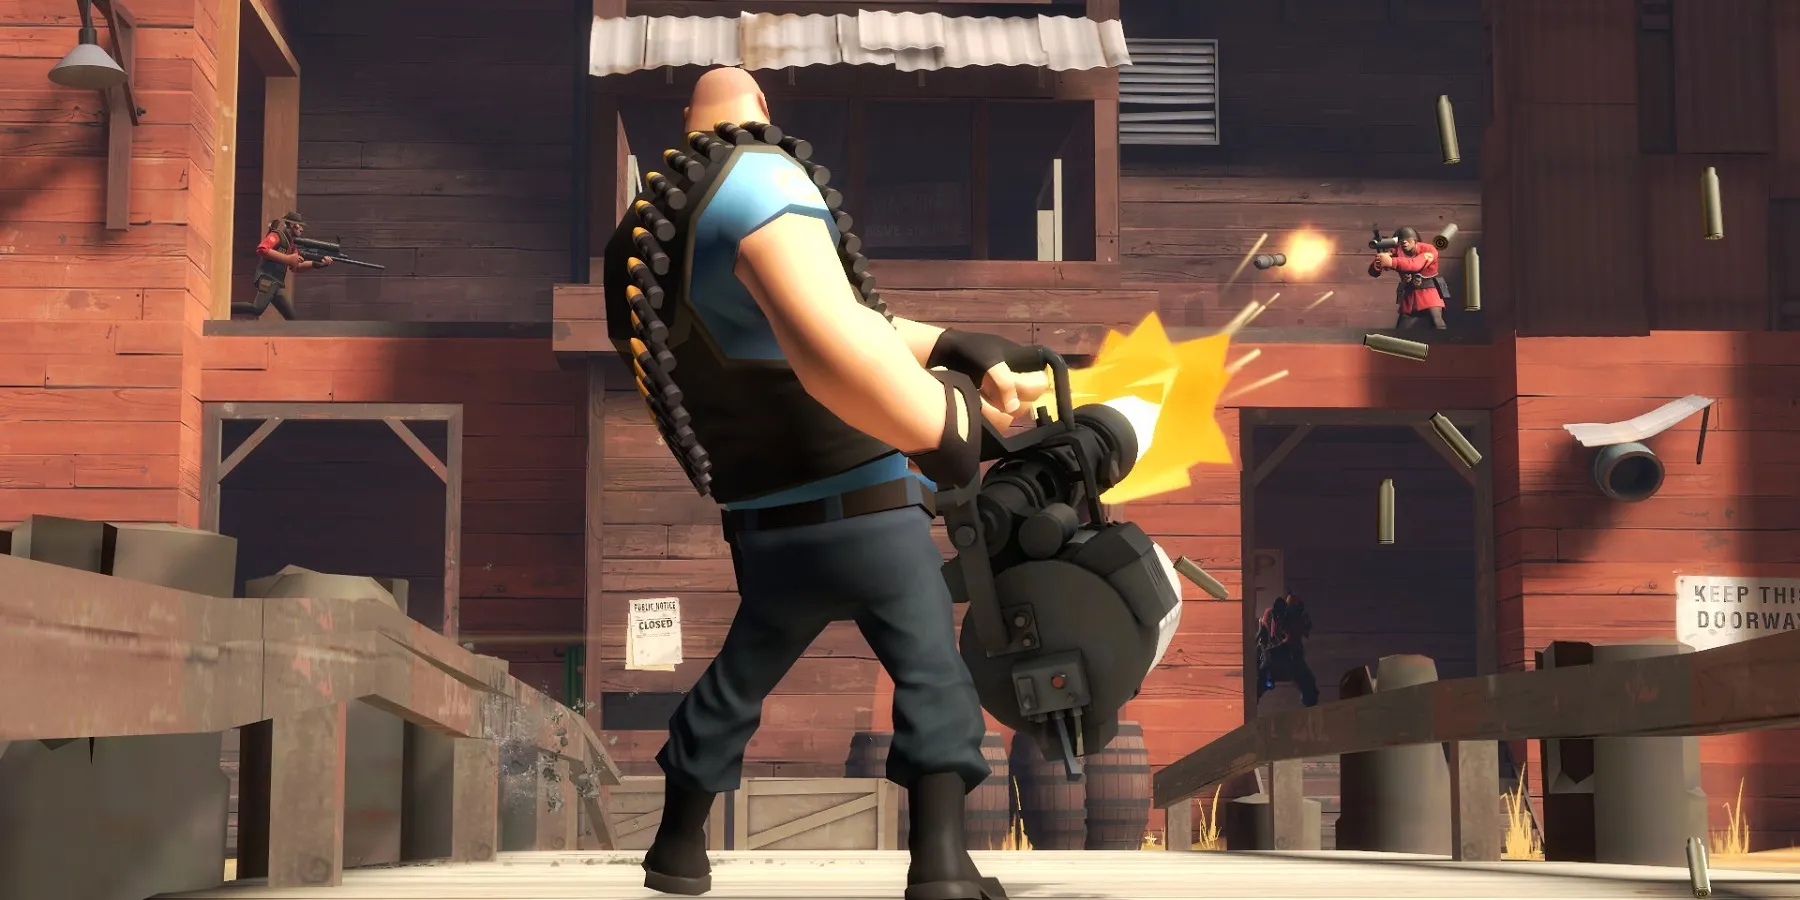 Image de Team Fortress 2 mettant en vedette le personnage Heavy